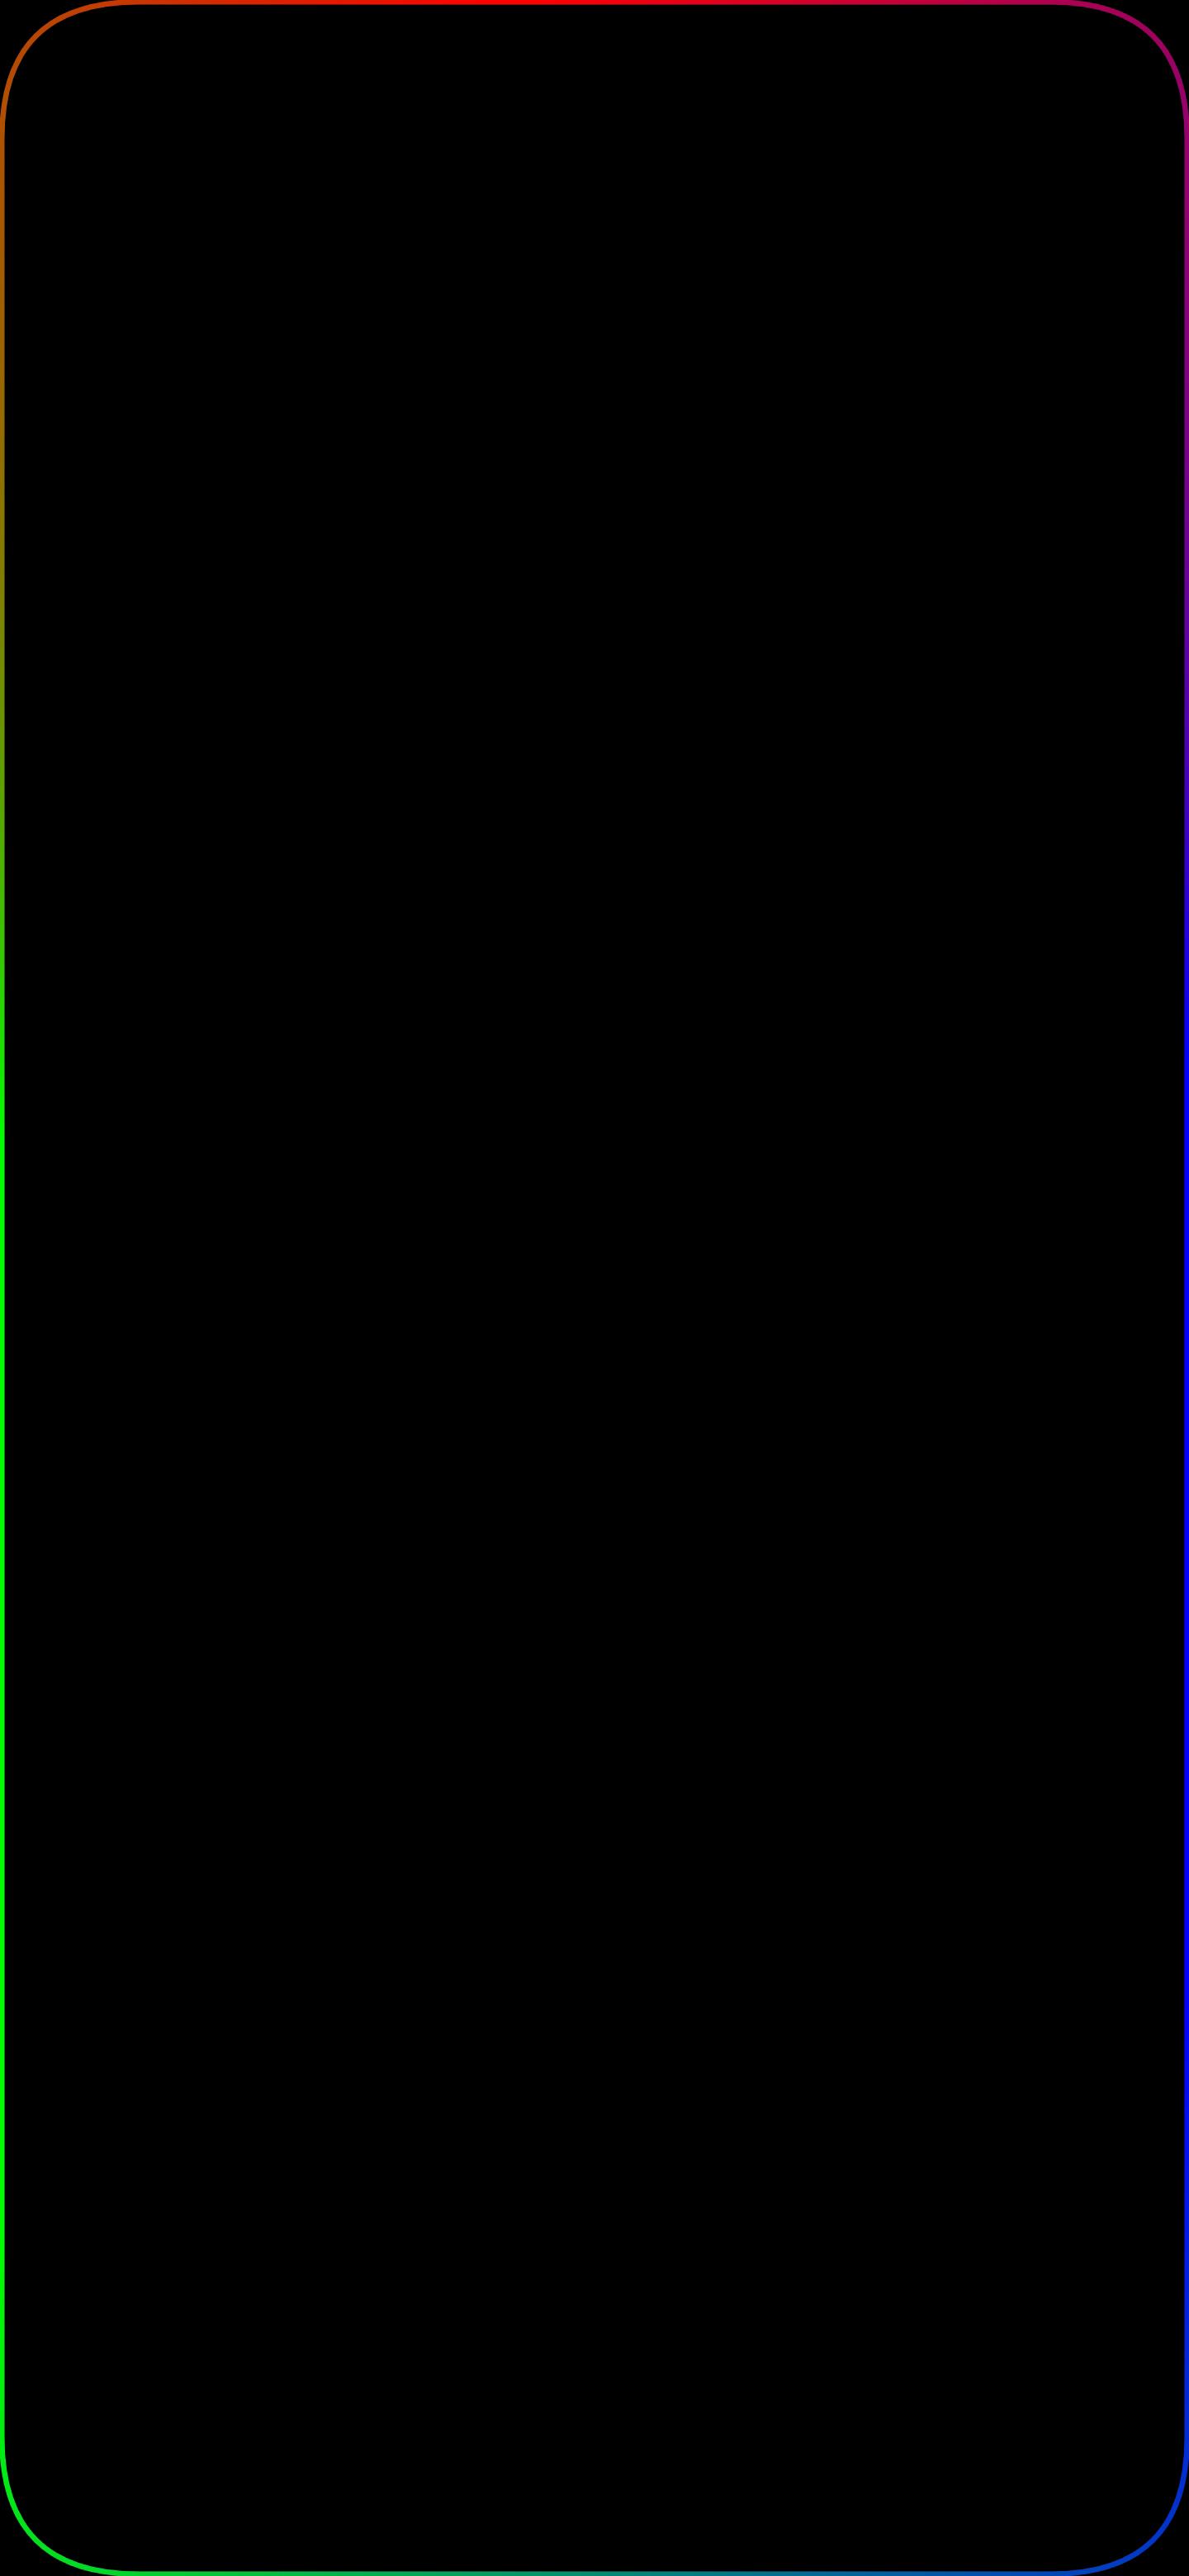 Rainbow Edge for OnePlus 7 pro (1440x3120)